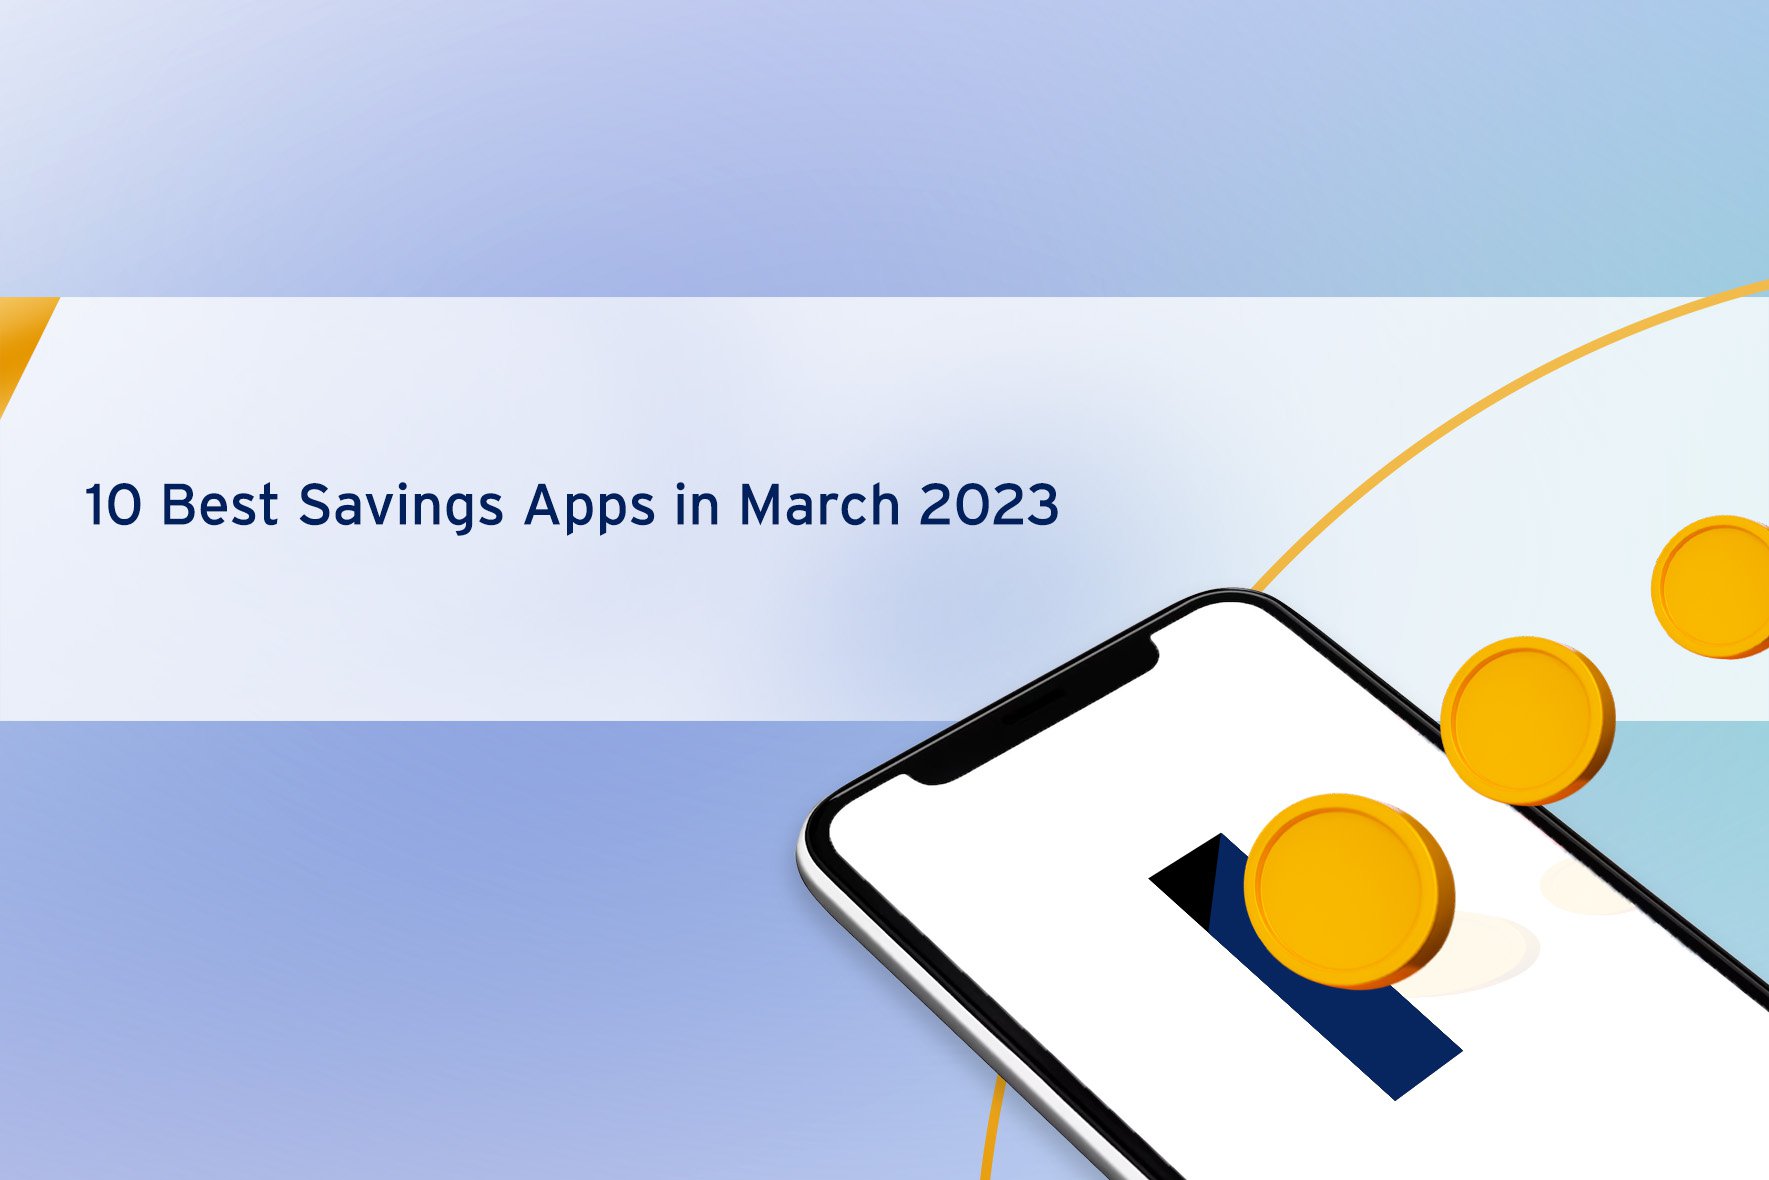 10 Best Savings Apps in March 2023